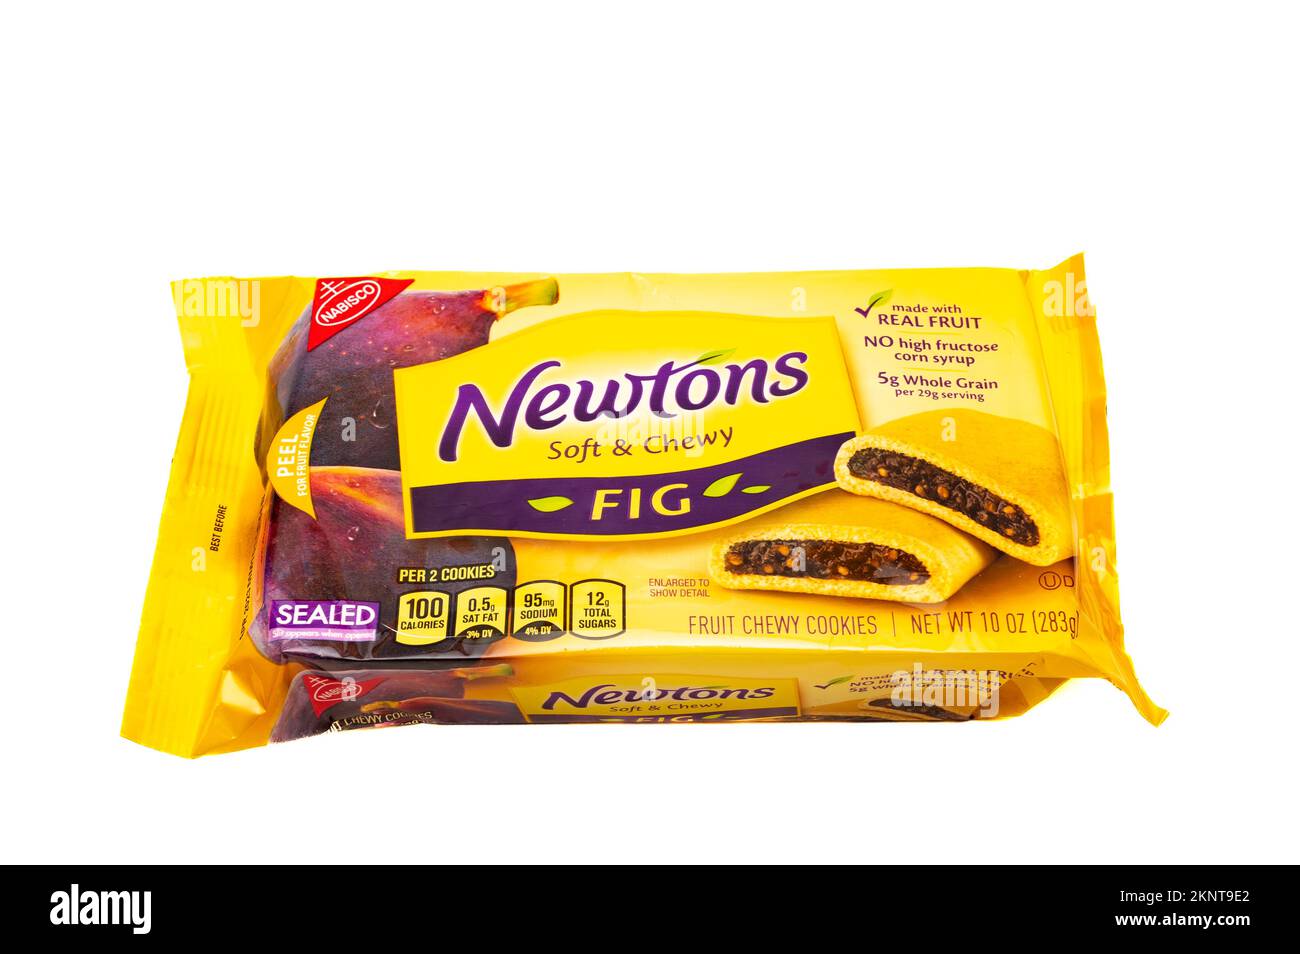 Un paquet de Newtons de la marque Nabisco, doux et mâché, fait de vrais fruits, isolé sur blanc Banque D'Images